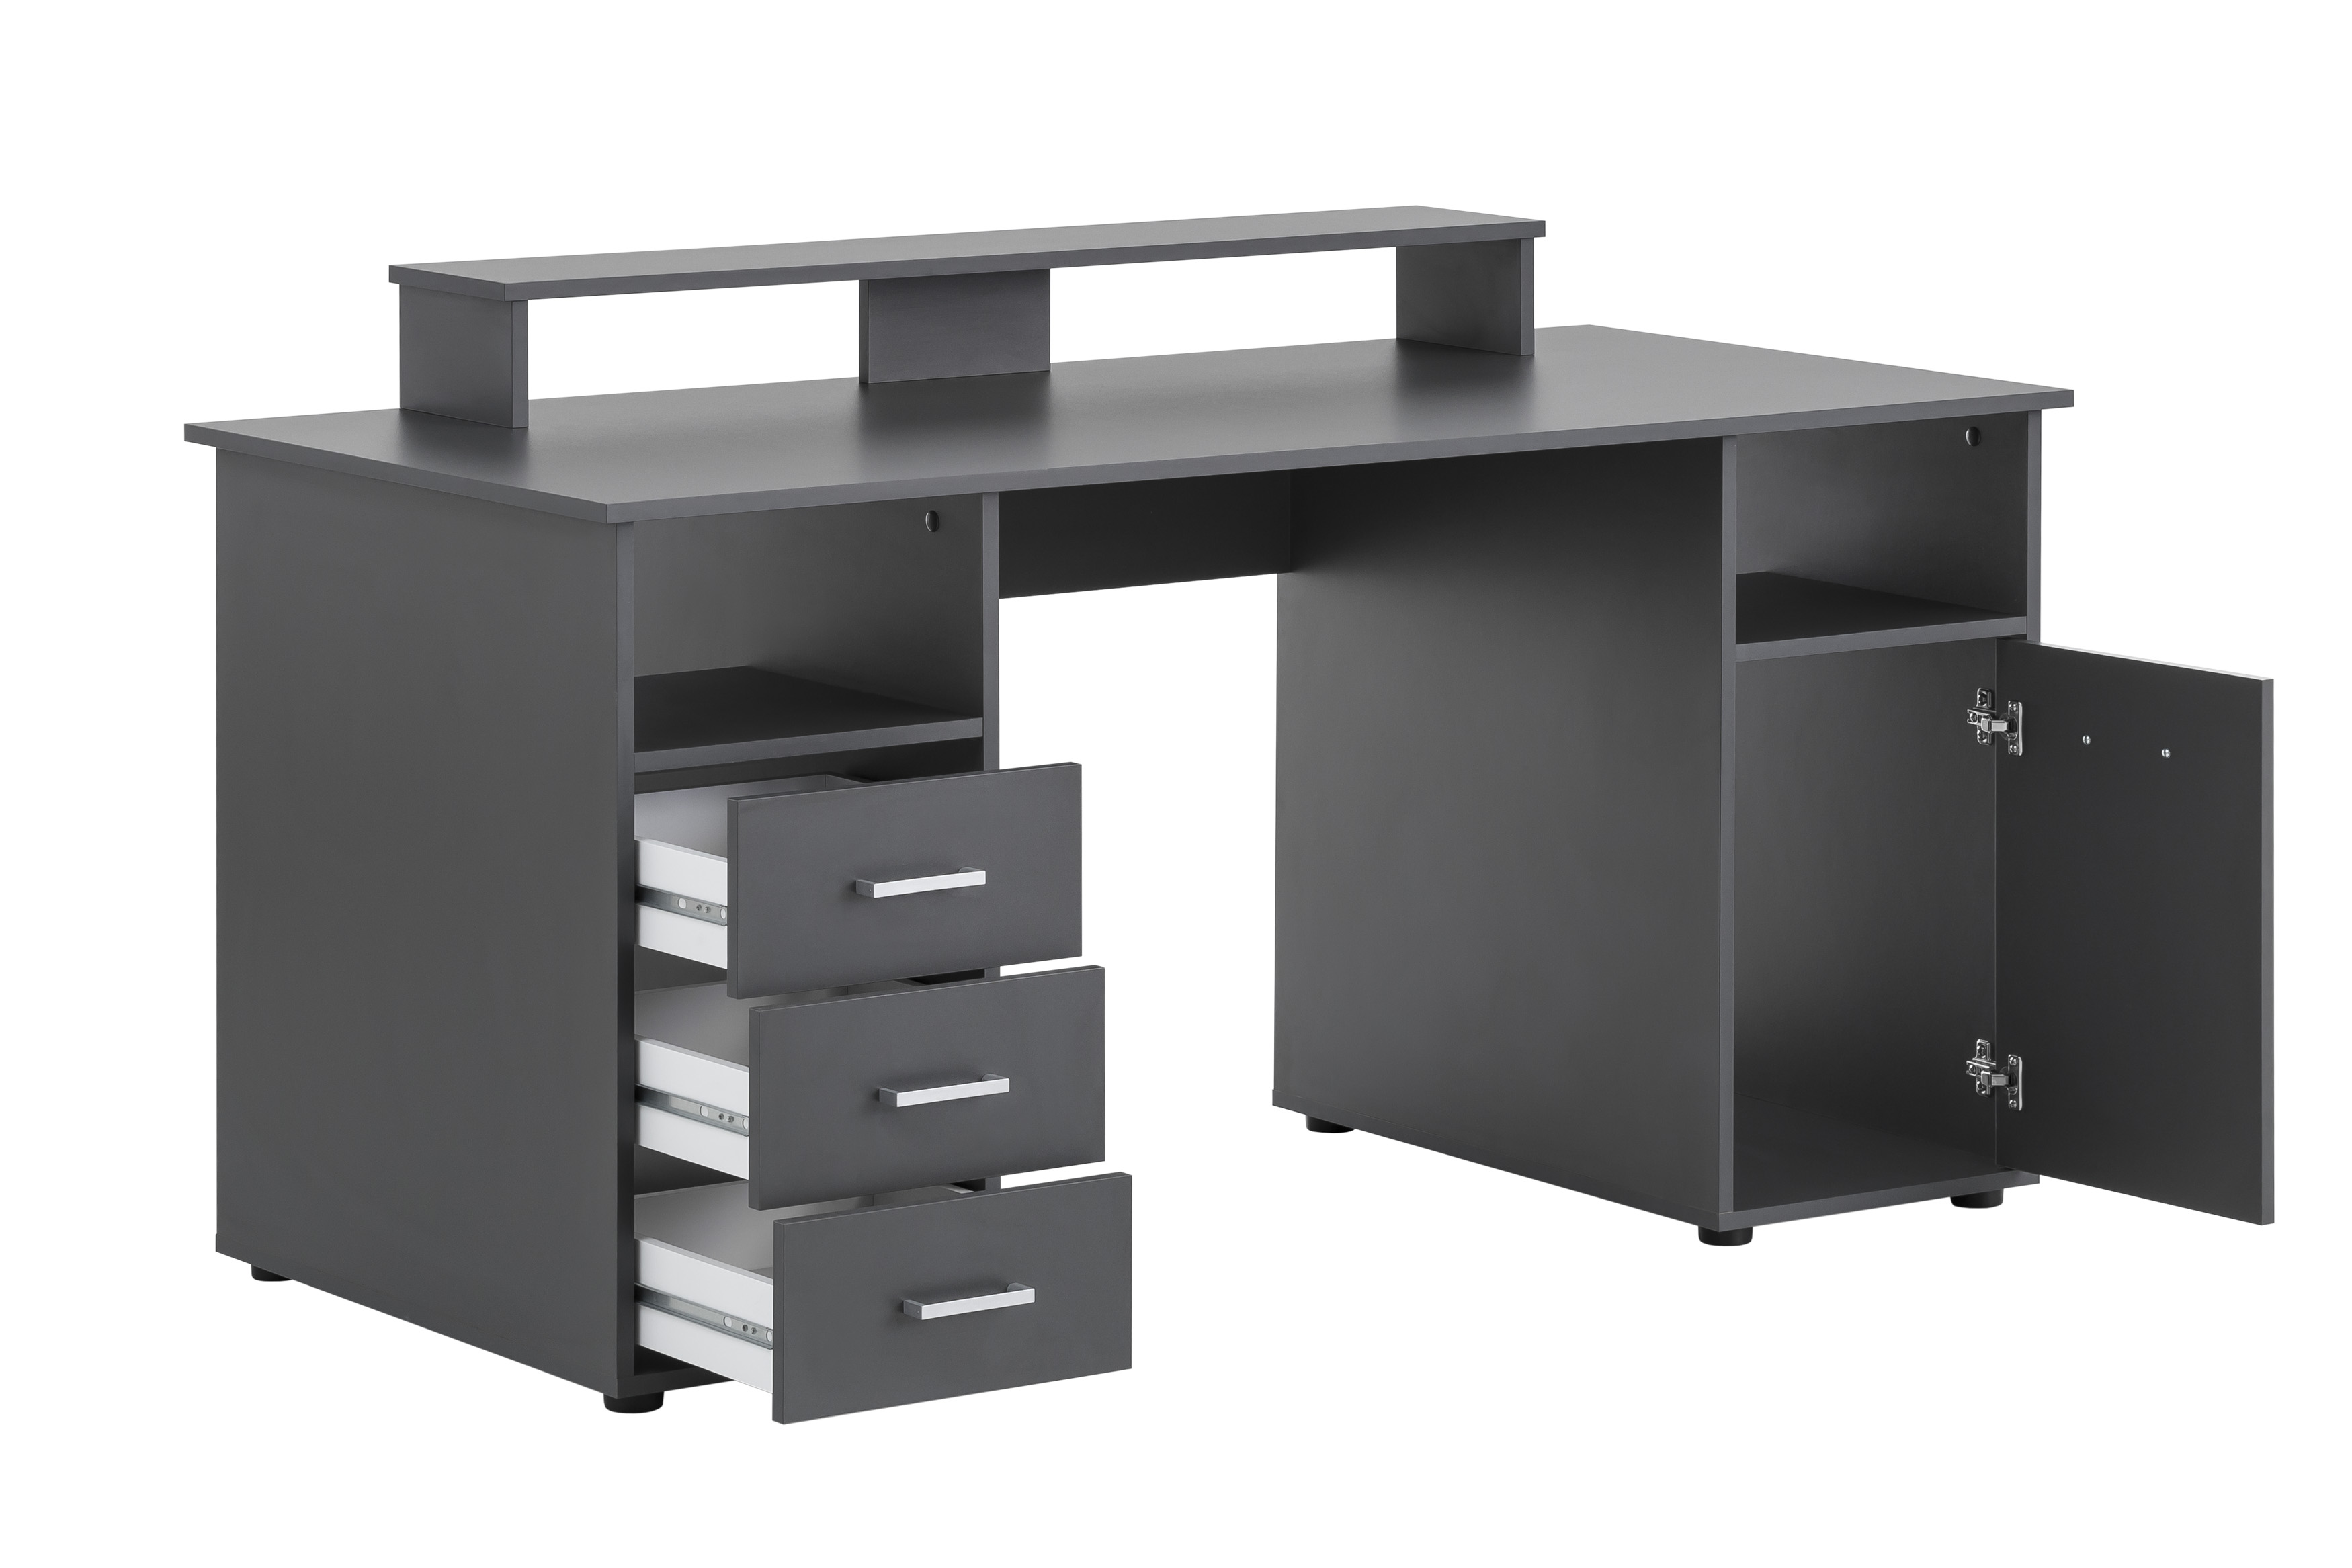 Möbelpartner Schreibtisch Fox | Large | HxBxT 86x150x70cm | 3 Schubladen, 2 offene Fächer, 1 Fach mit Flügeltür & Monitorständer | Anthrazit